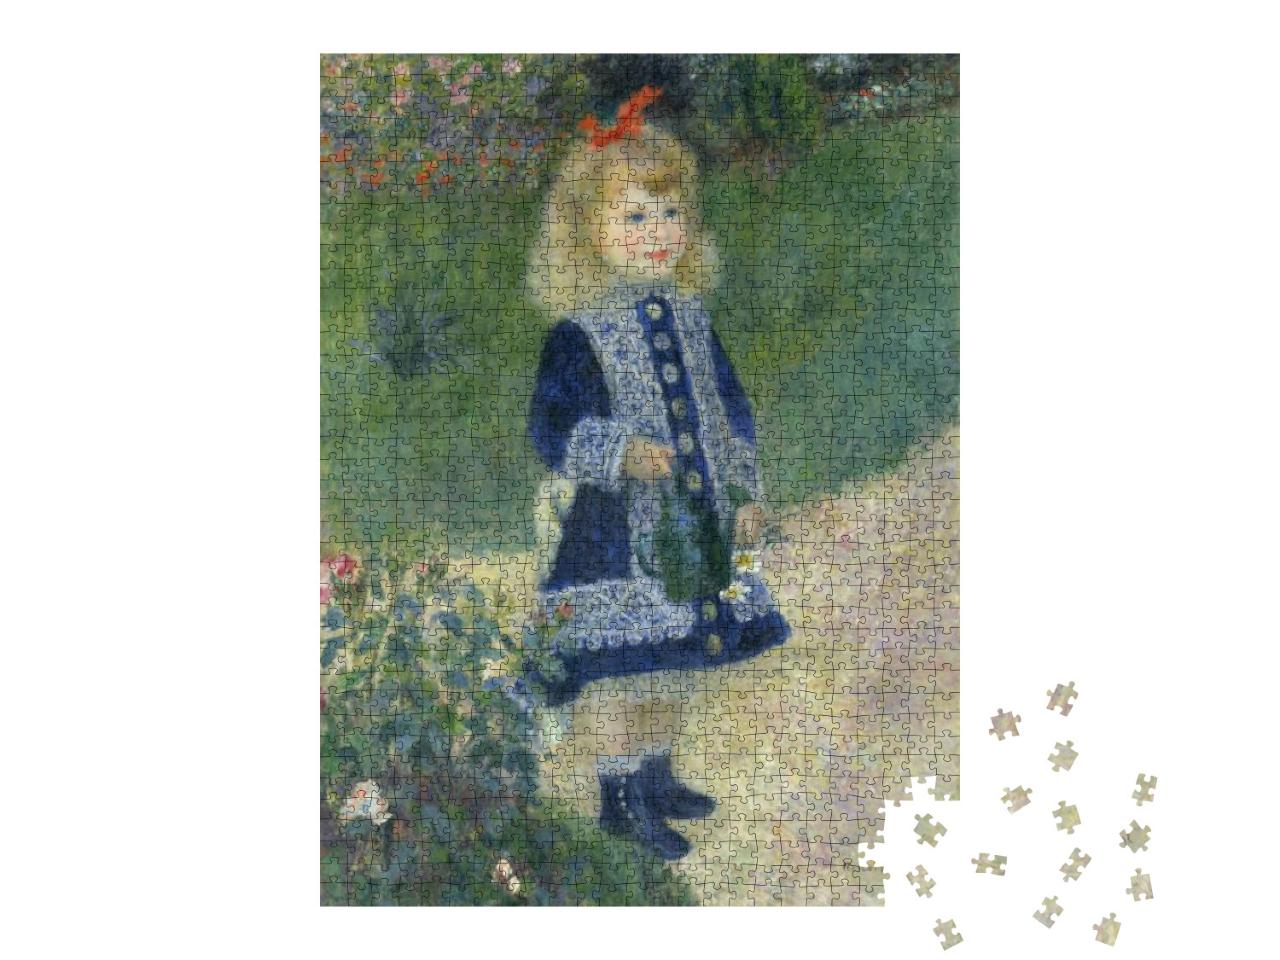 Puzzle 1000 Teile „Das Mädchen mit der Gießkanne, Auguste Renoir 1876“